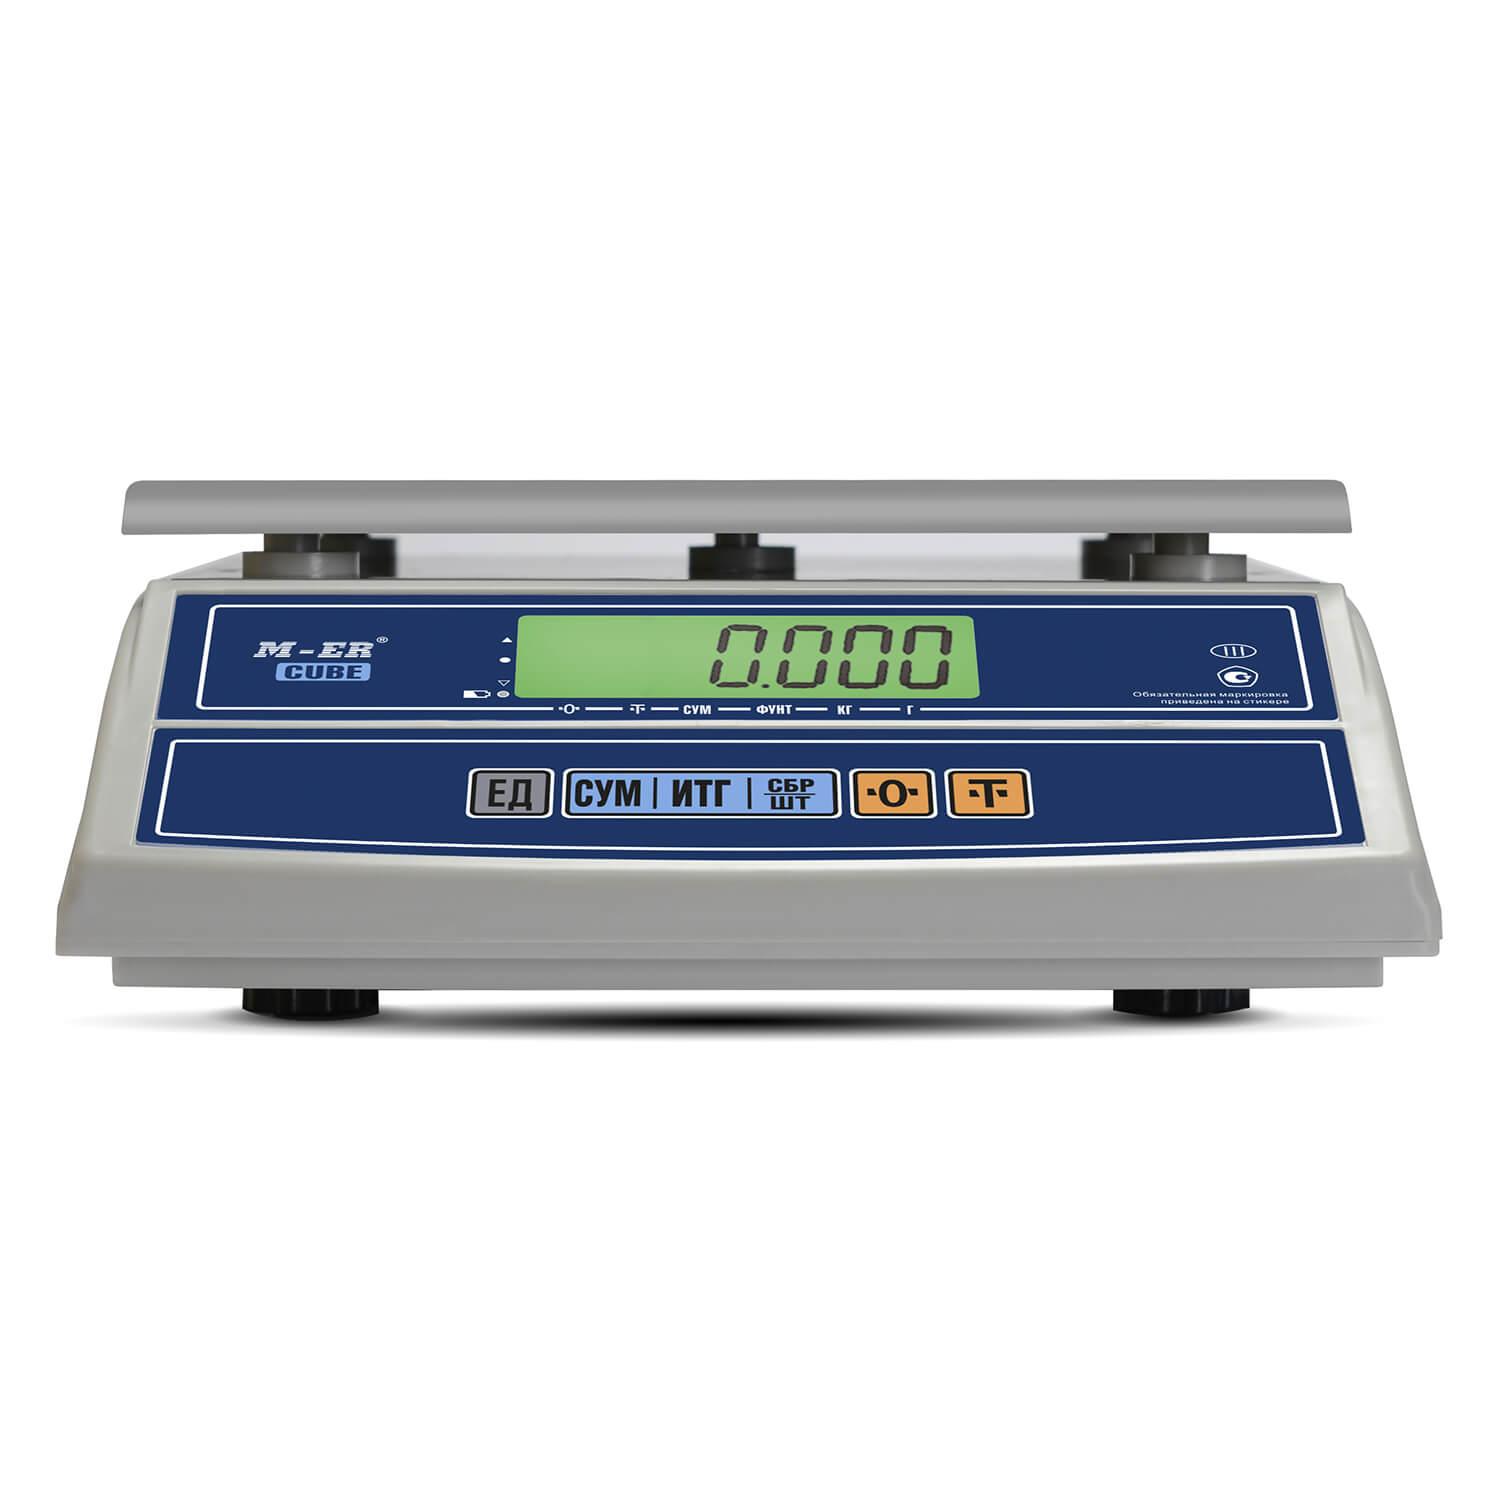 Фасовочные настольные весы M-ER 326 AFL-32.5 "Cube" c USB-COM LCD (3147)